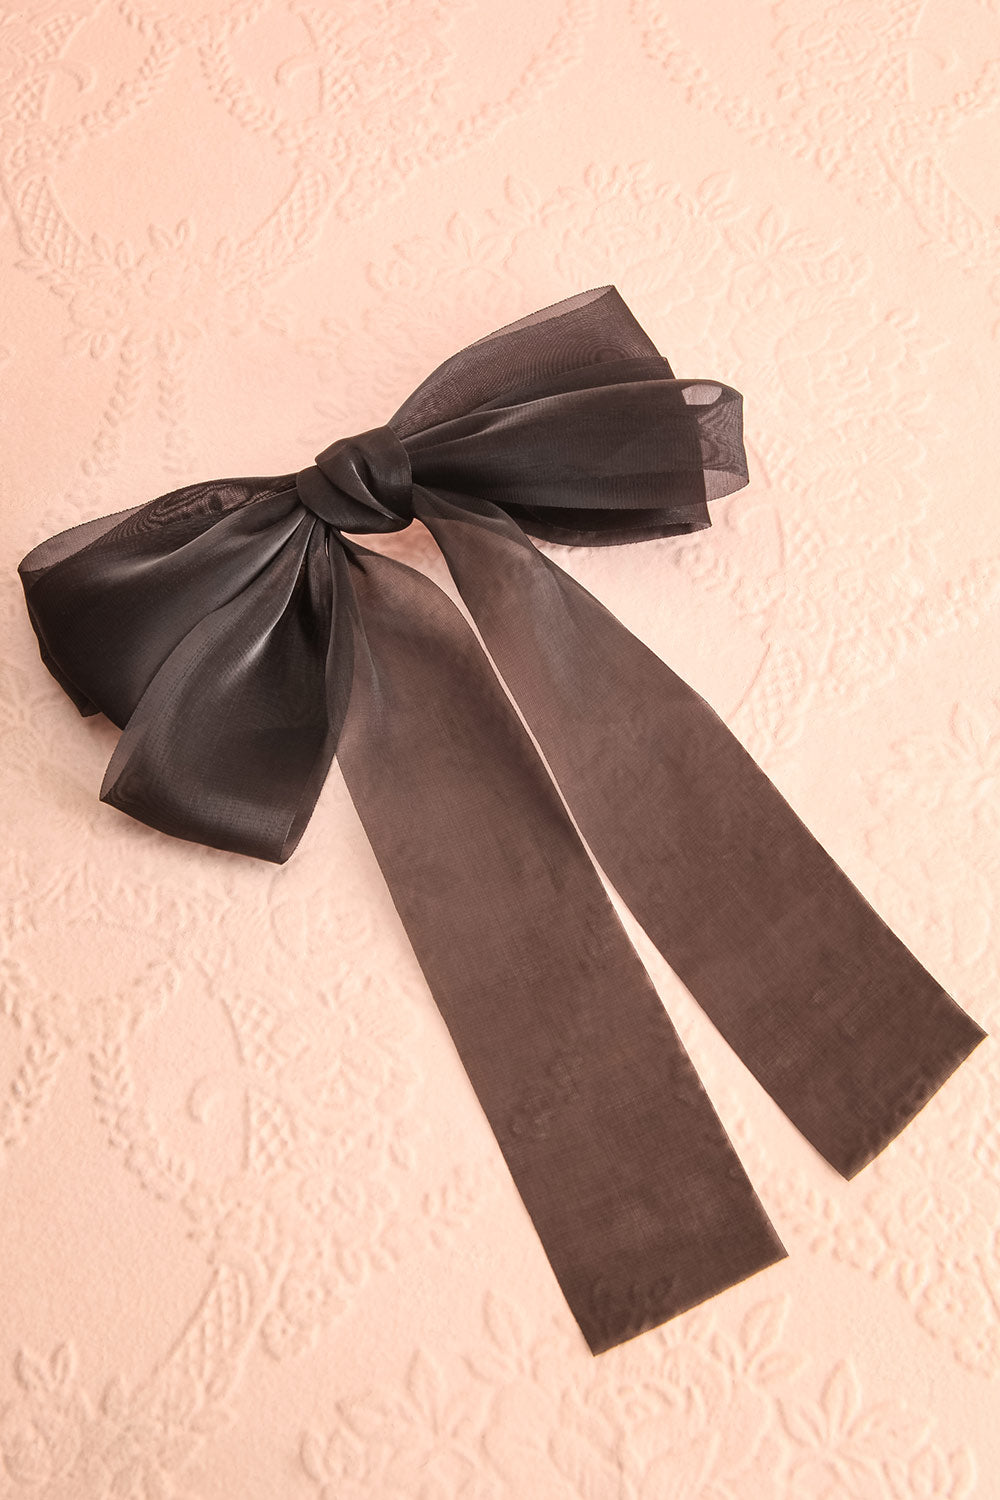 Hattie Black Bow Hair Clip | Boutique 1861